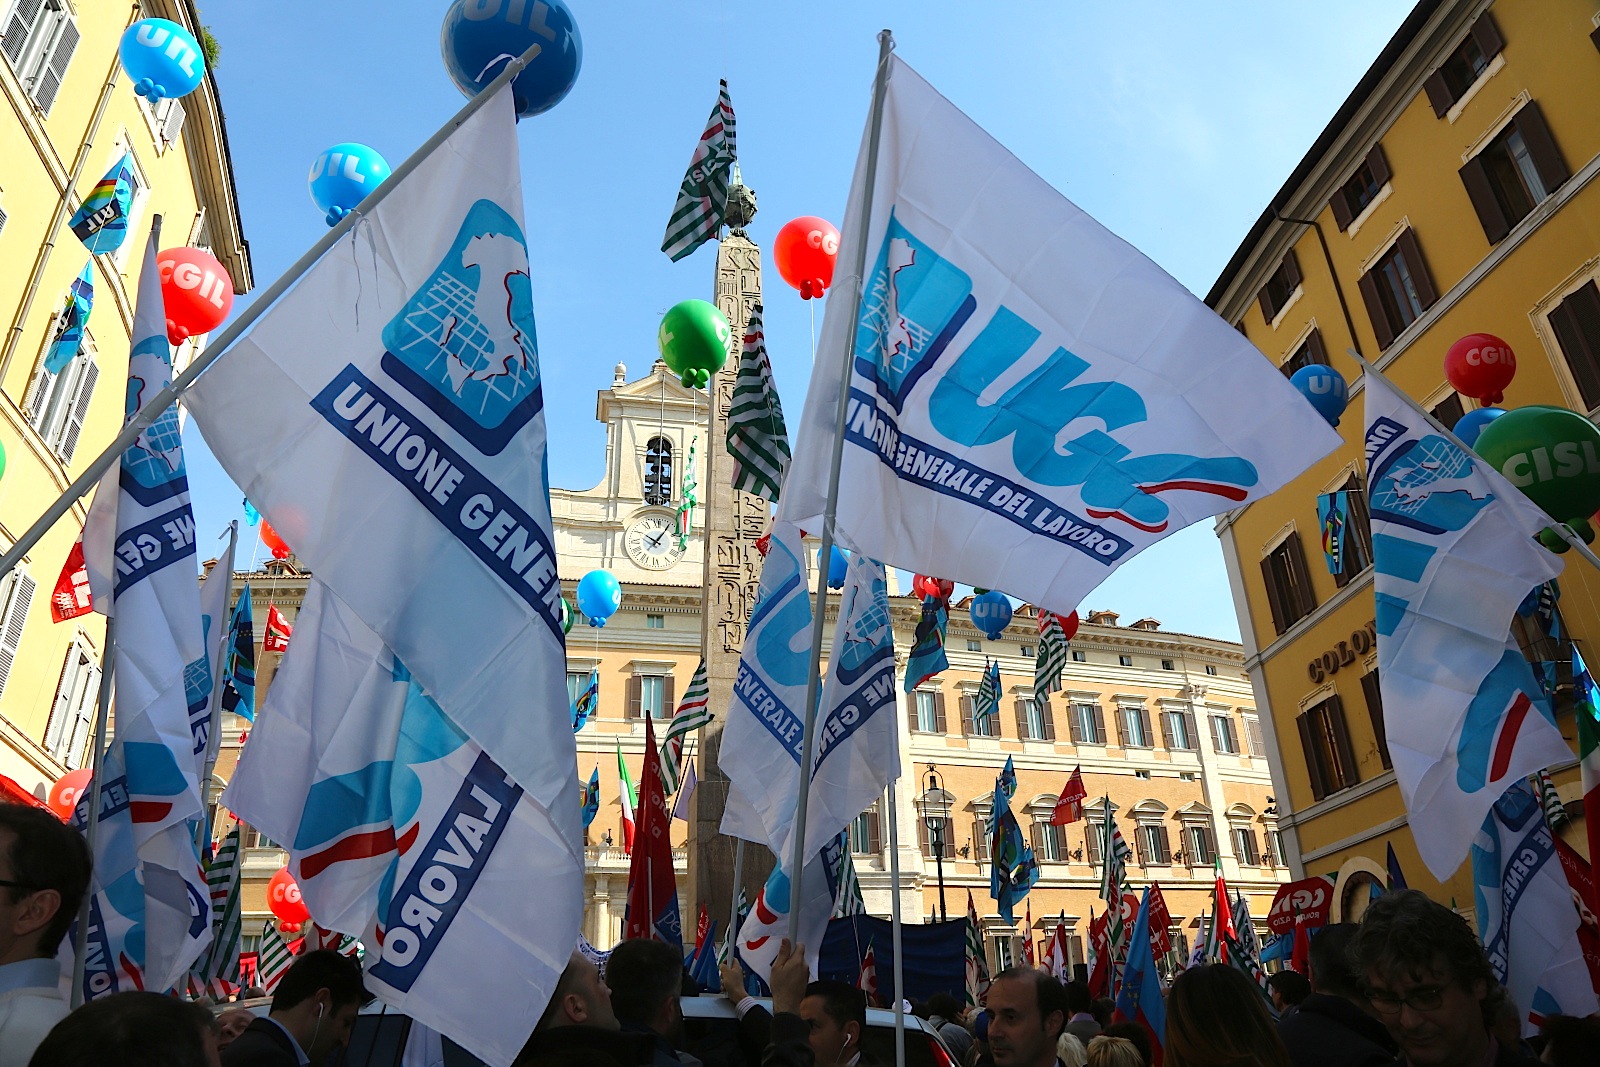 “A Genova per confronto con sindacalisti e lavoratori”